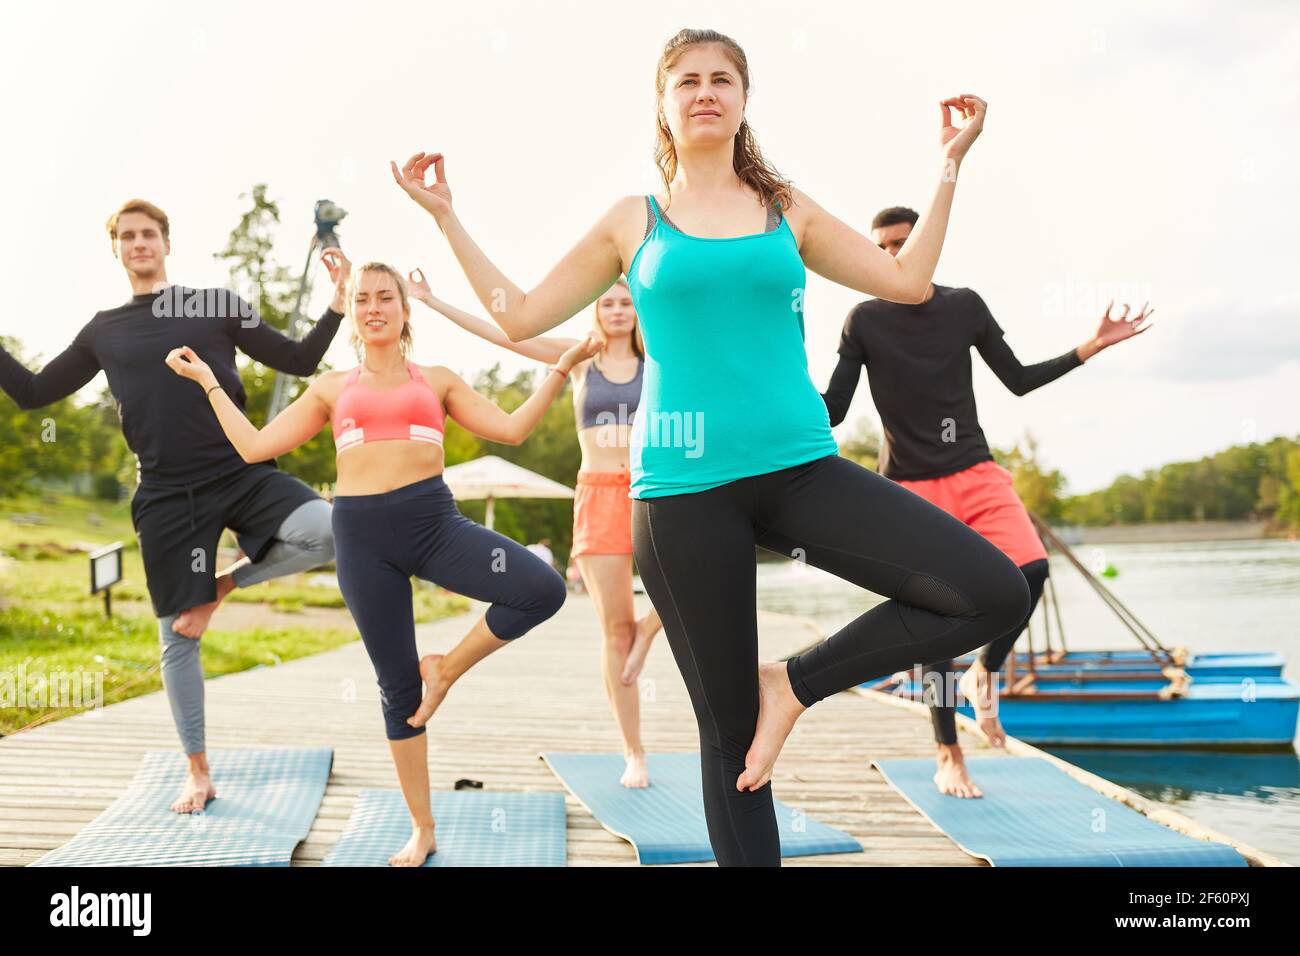 Freunde stehen auf einem Bein und machen Gleichgewichtsübungen im Wellness Yoga-Kurs am See Stockfoto